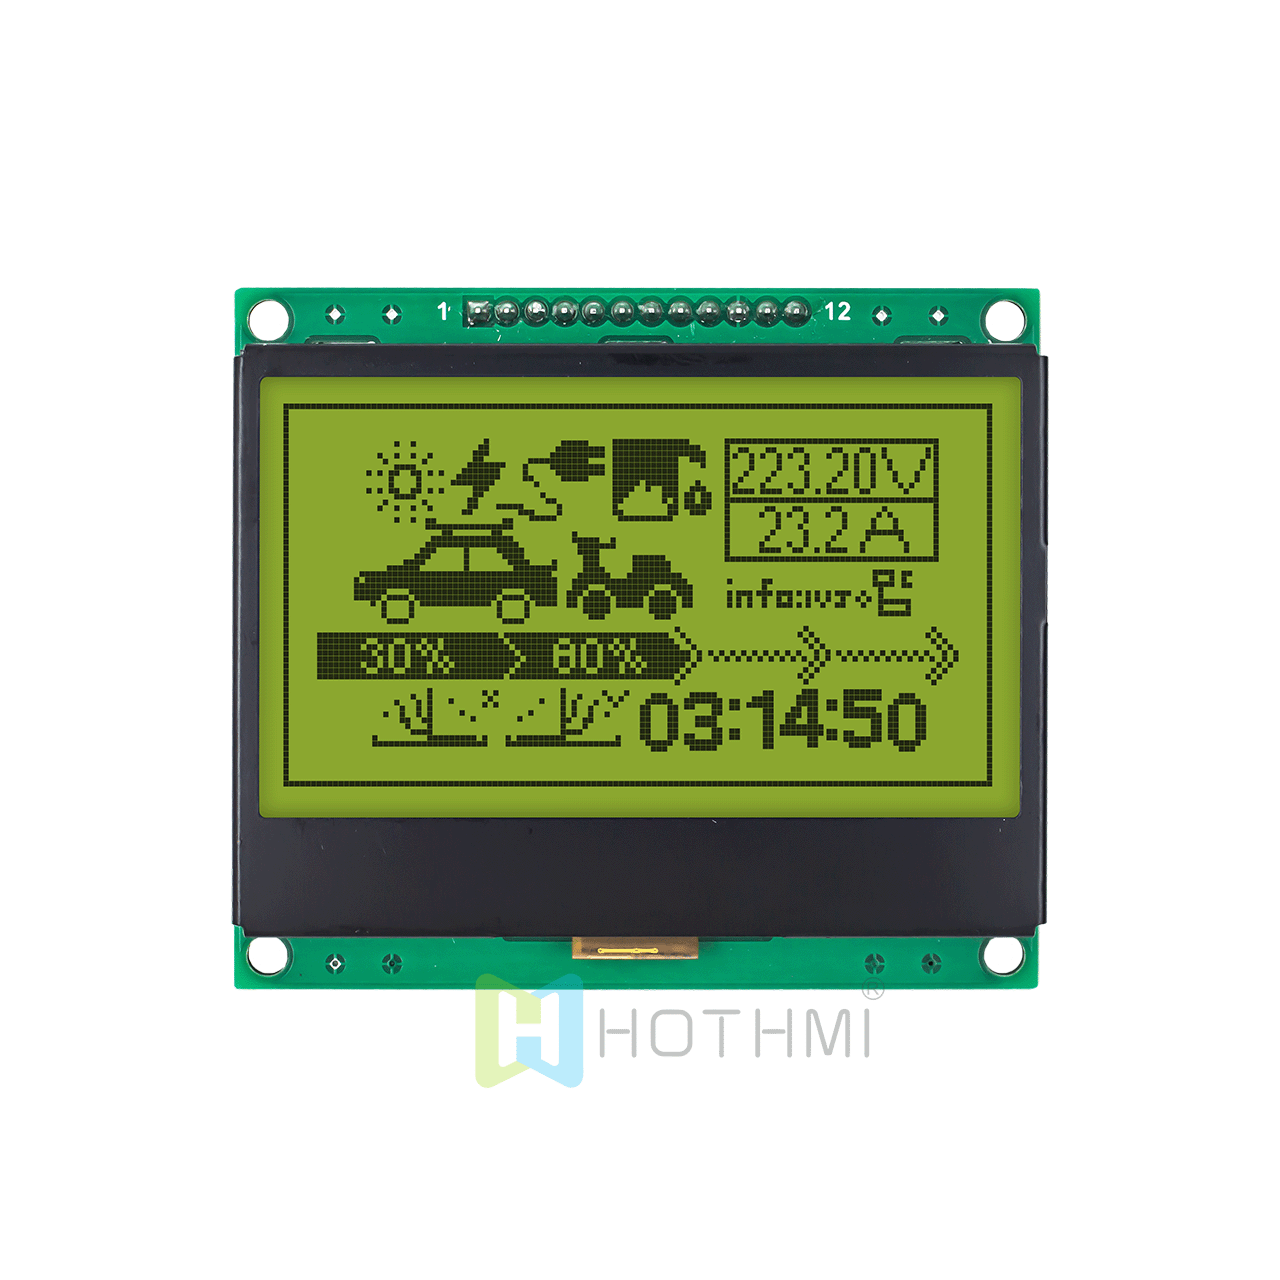 适用于 Arduino 的 3 英寸黄绿色 128x64 图形 LCD 显示模块 SPI